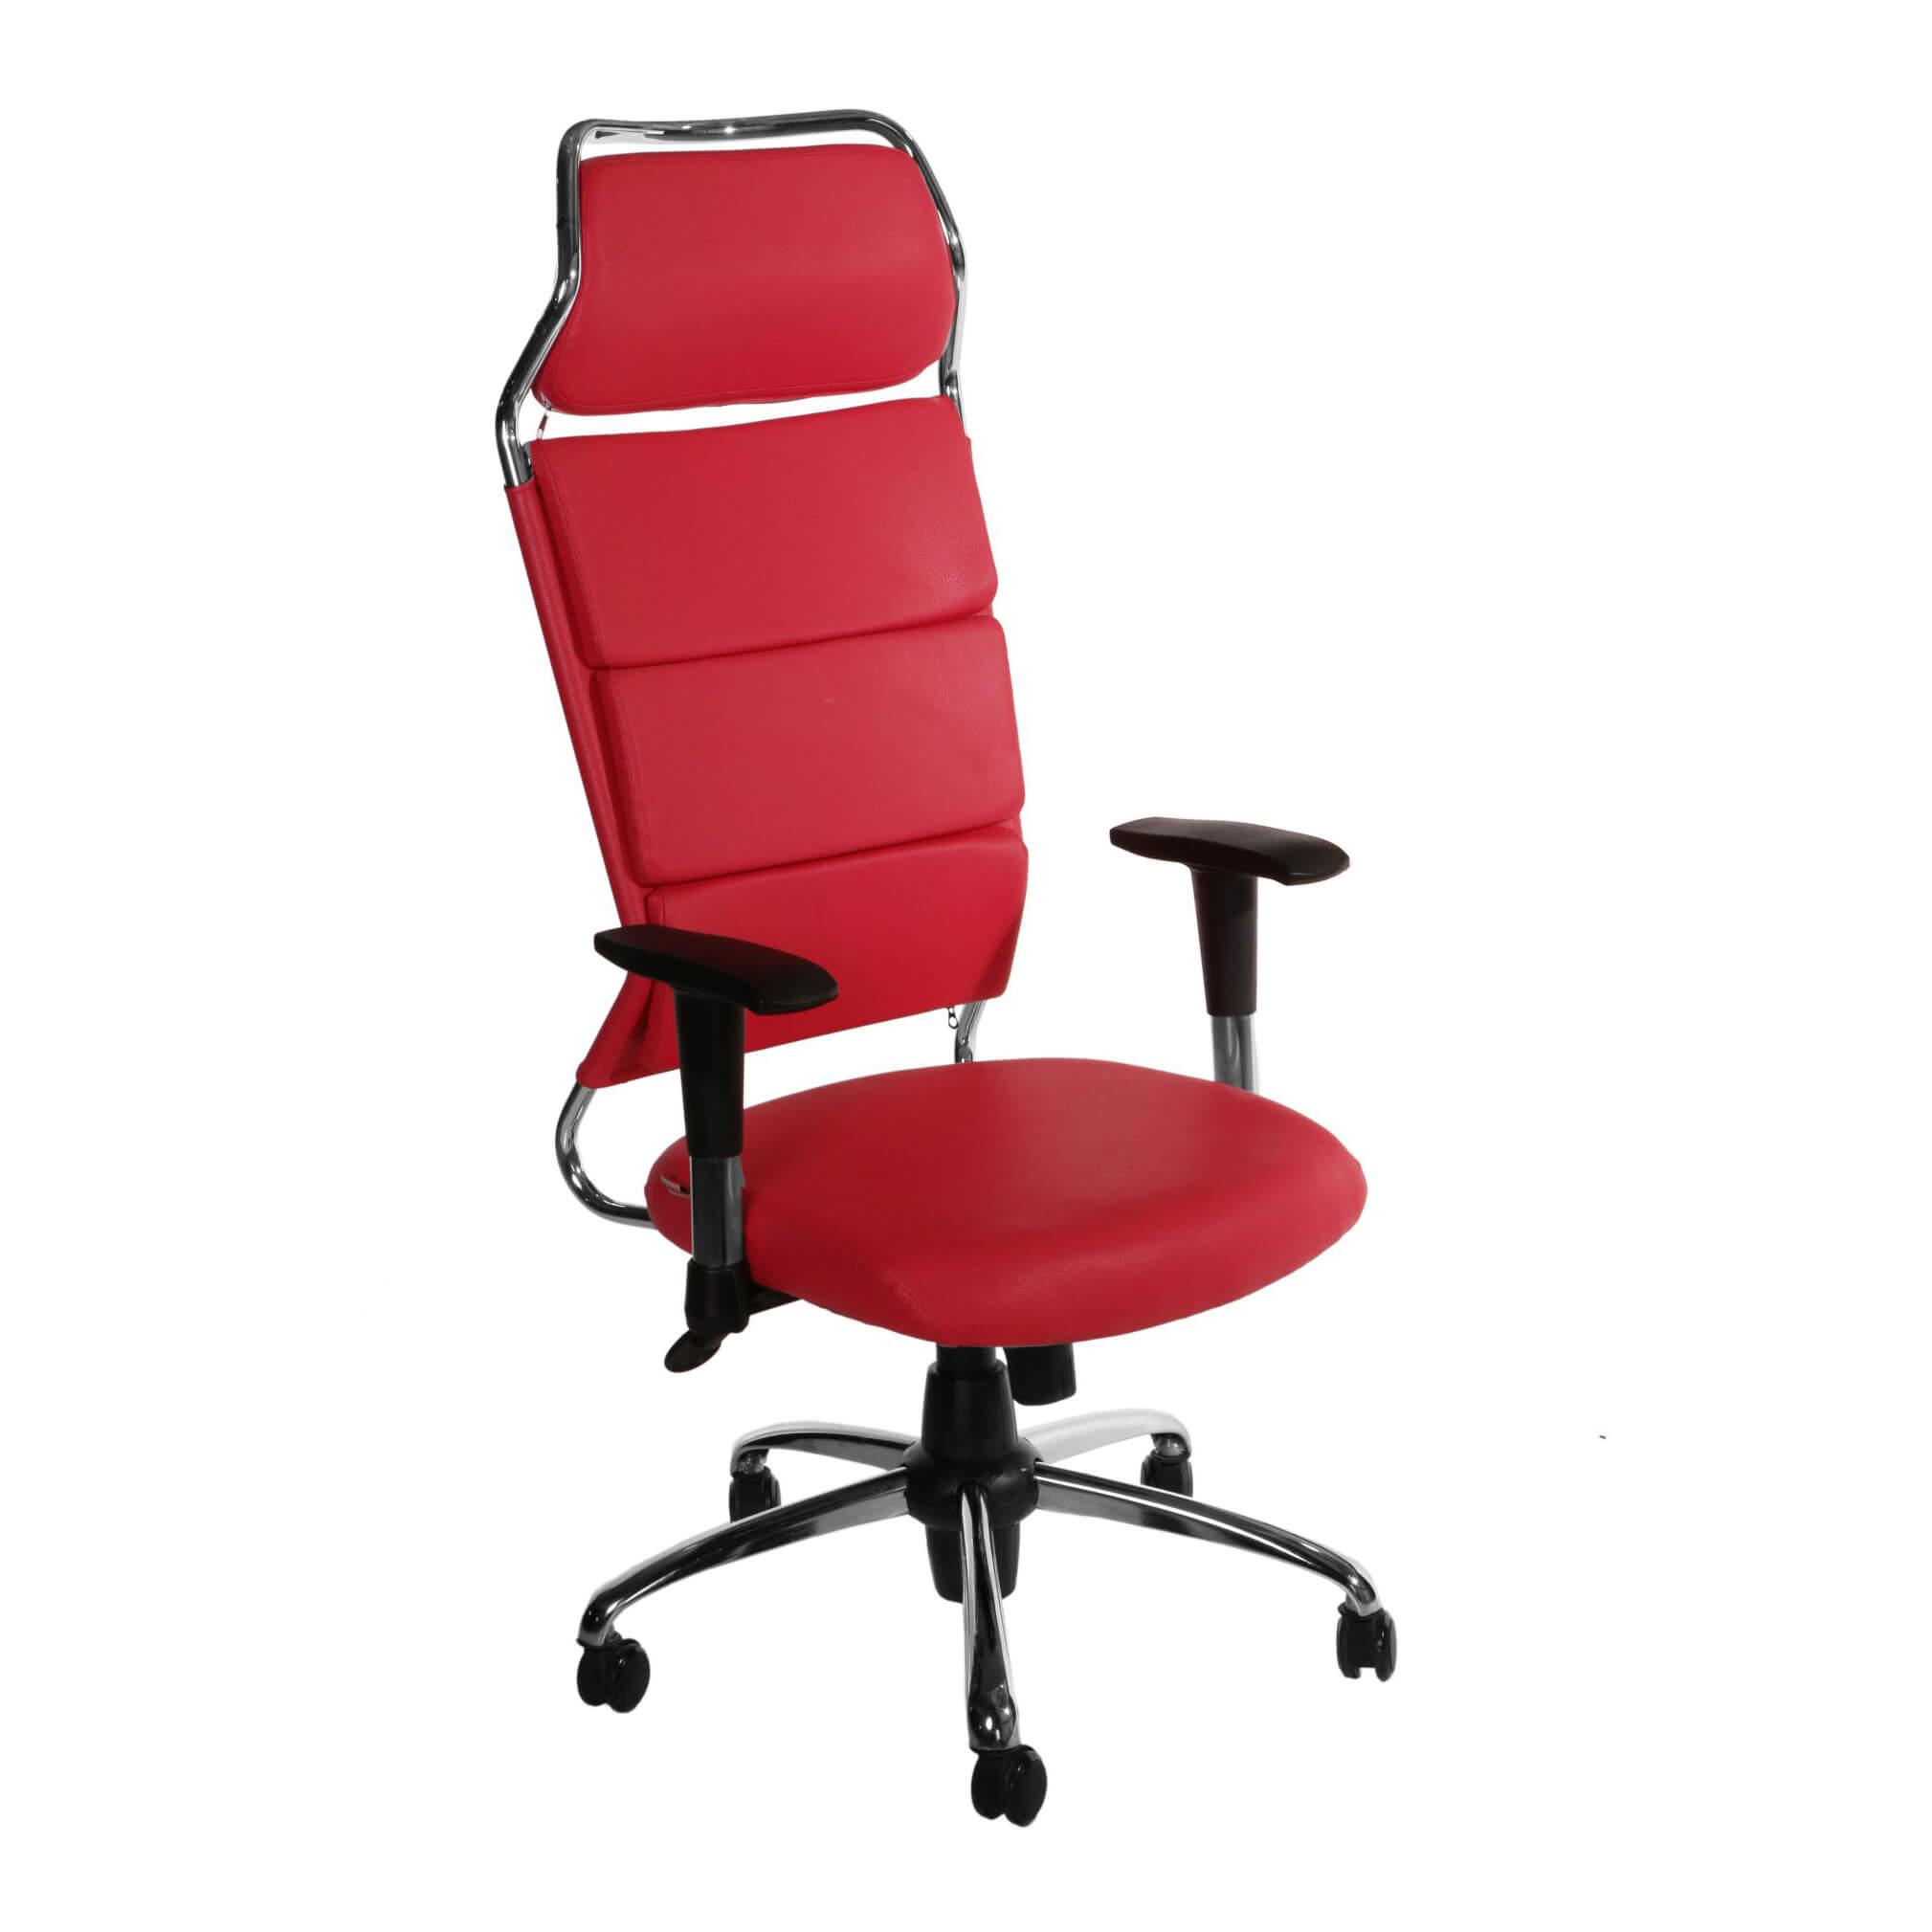 صندلی مدیریتی چوب فروش – مدل M201